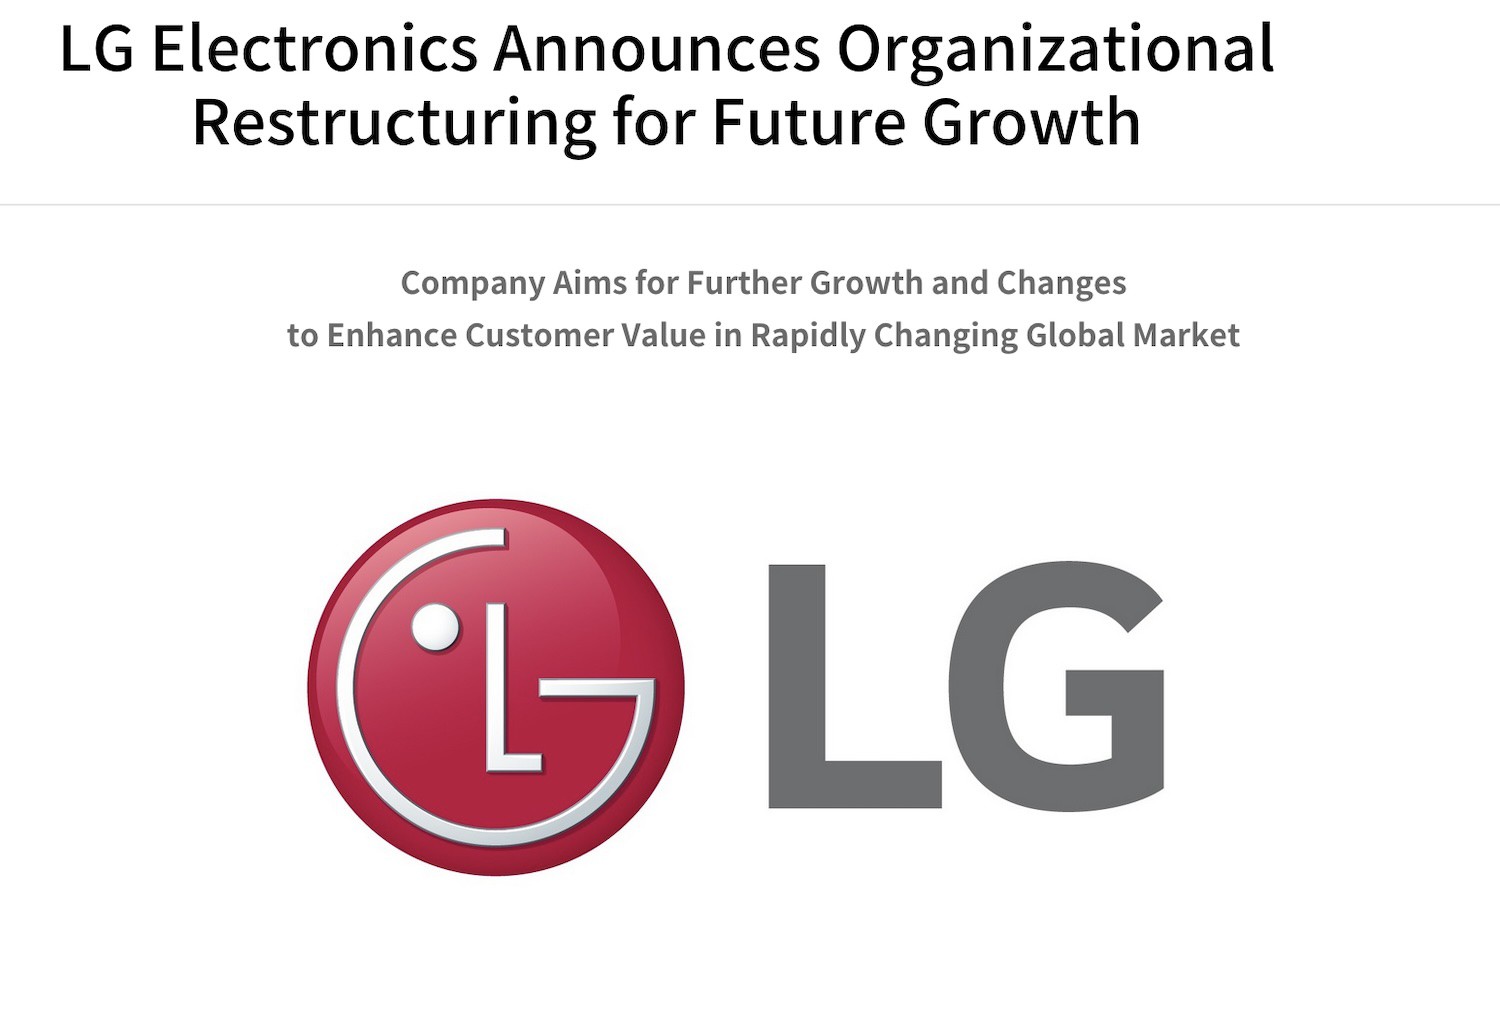 LG-electrolics.jpeg